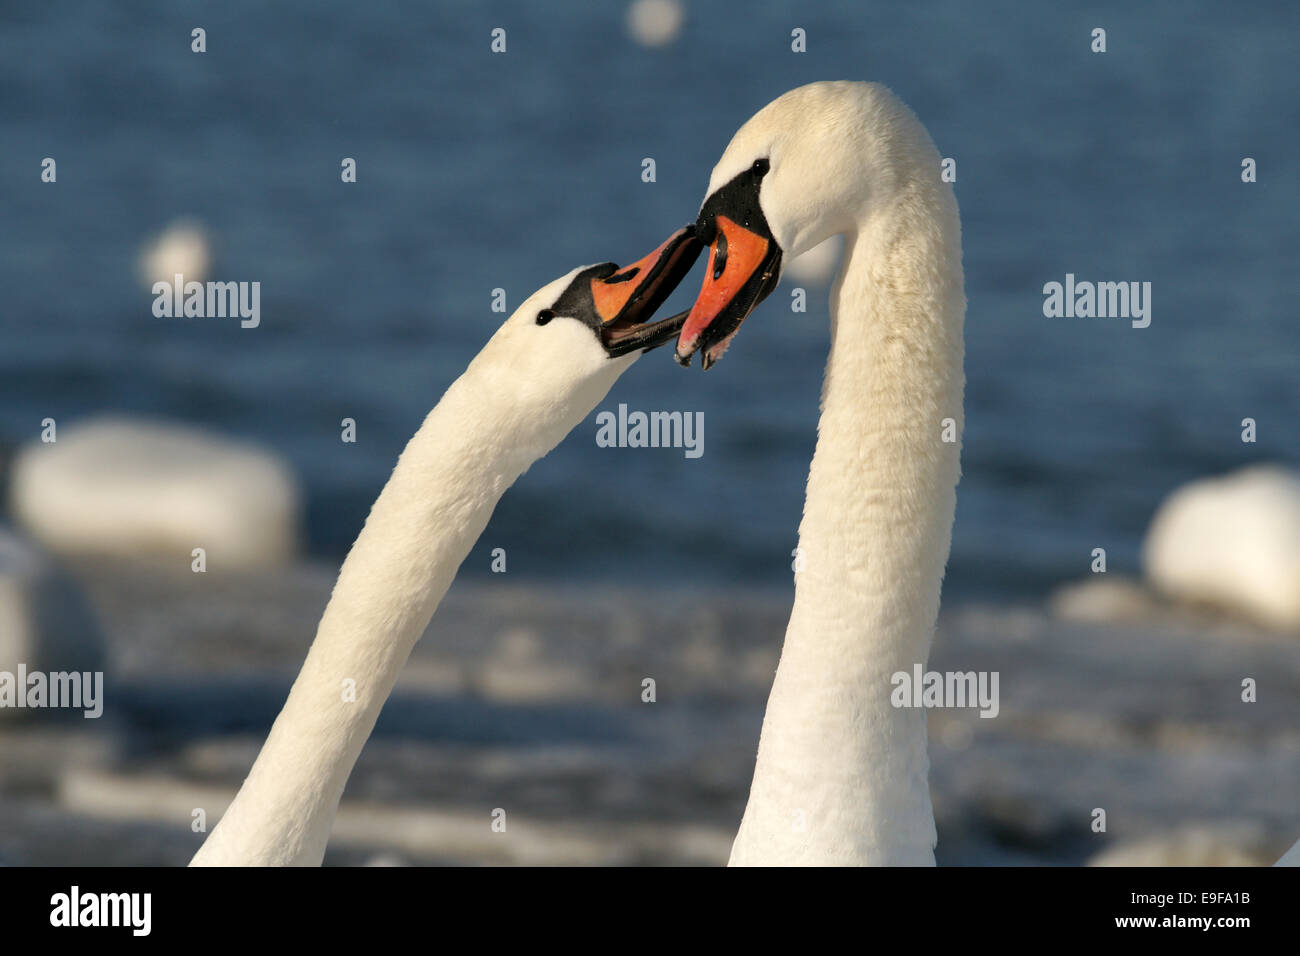 White swans Stock Photo